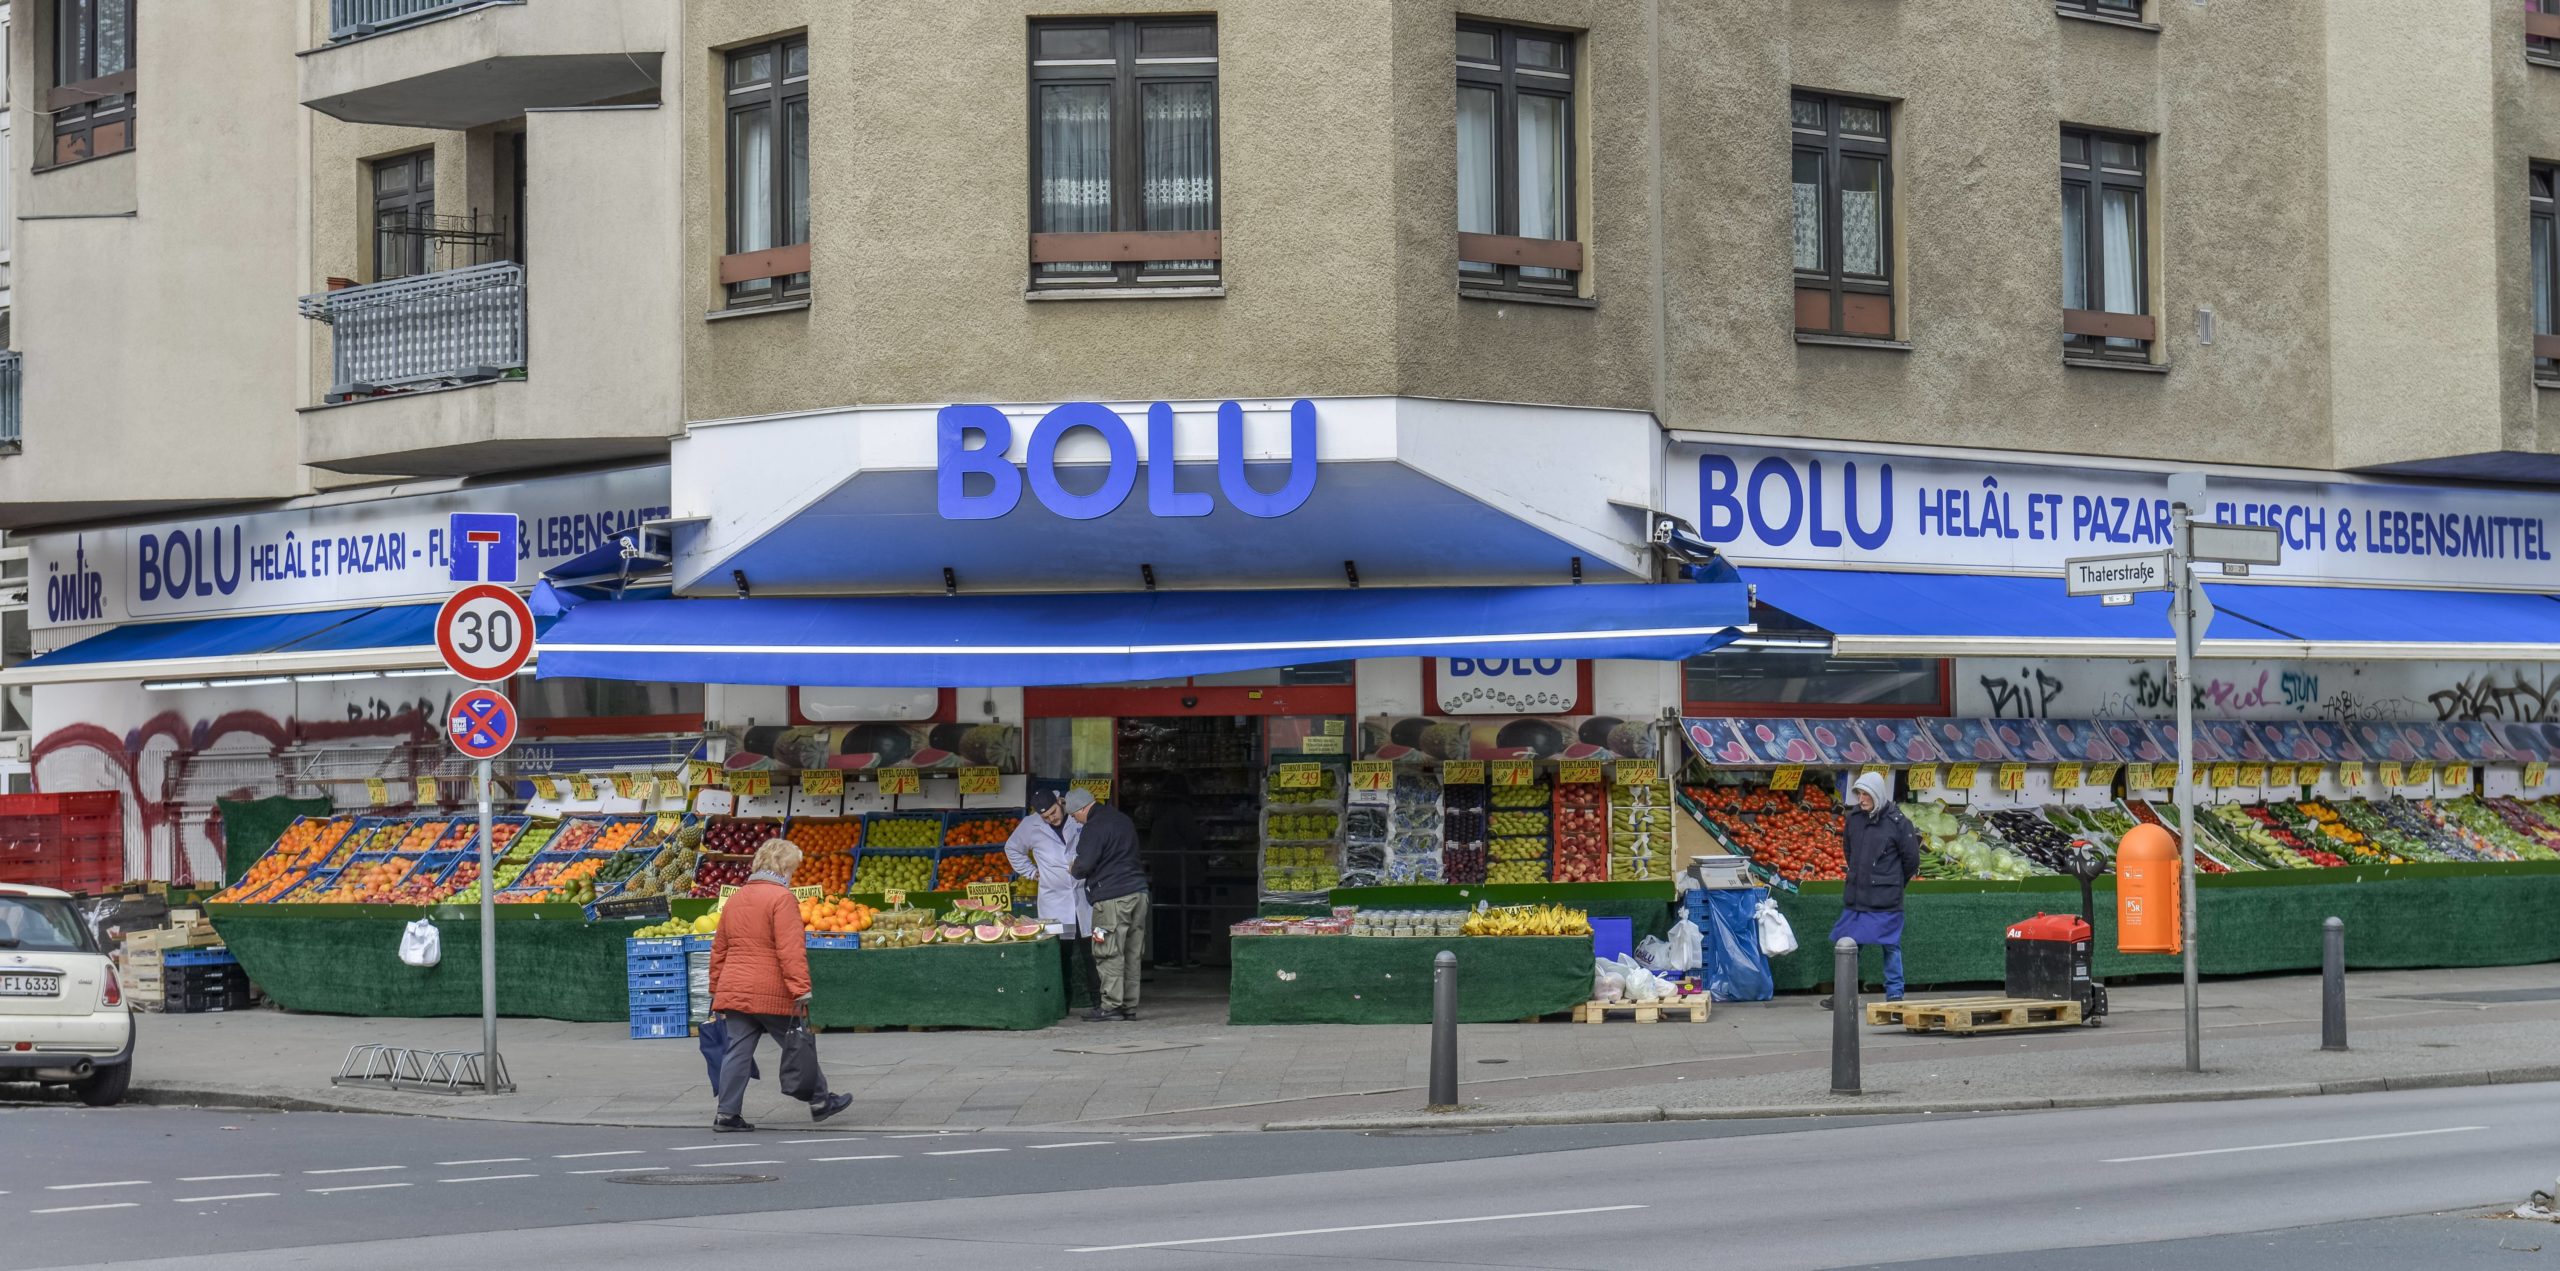 Einflussreiche Familien in Berlin: Zehn Bolu-Supermärkte haben die Kazancioglu-Brüder in Berlin eröffnet. 